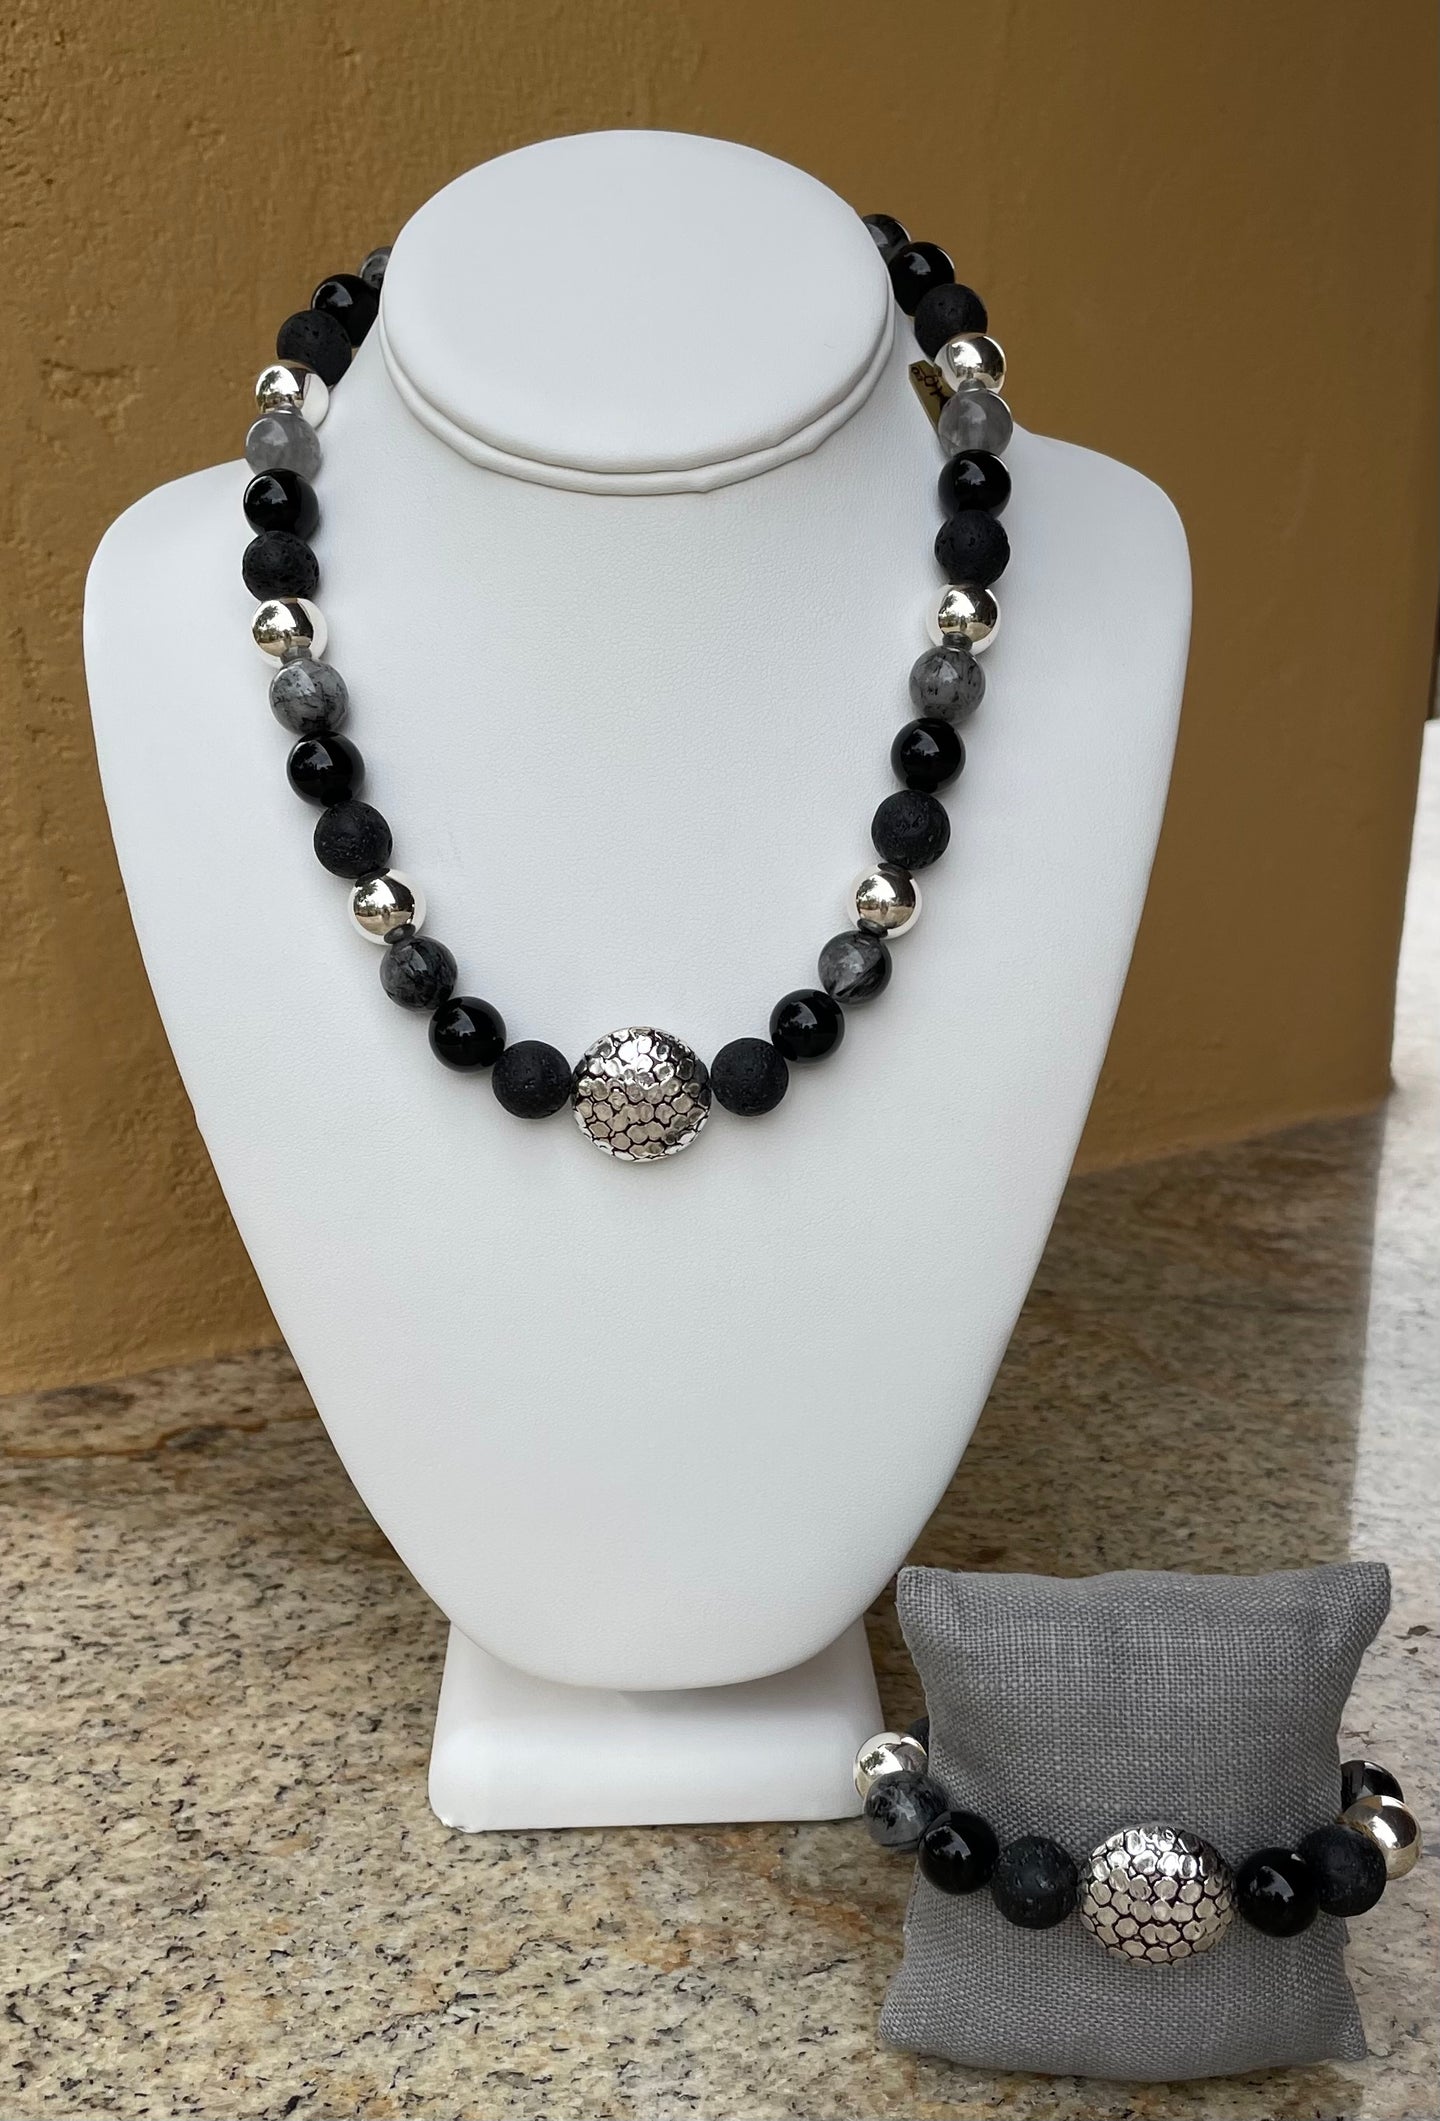 Set = Necklace and Bracelet set - Black and Sterling Silver